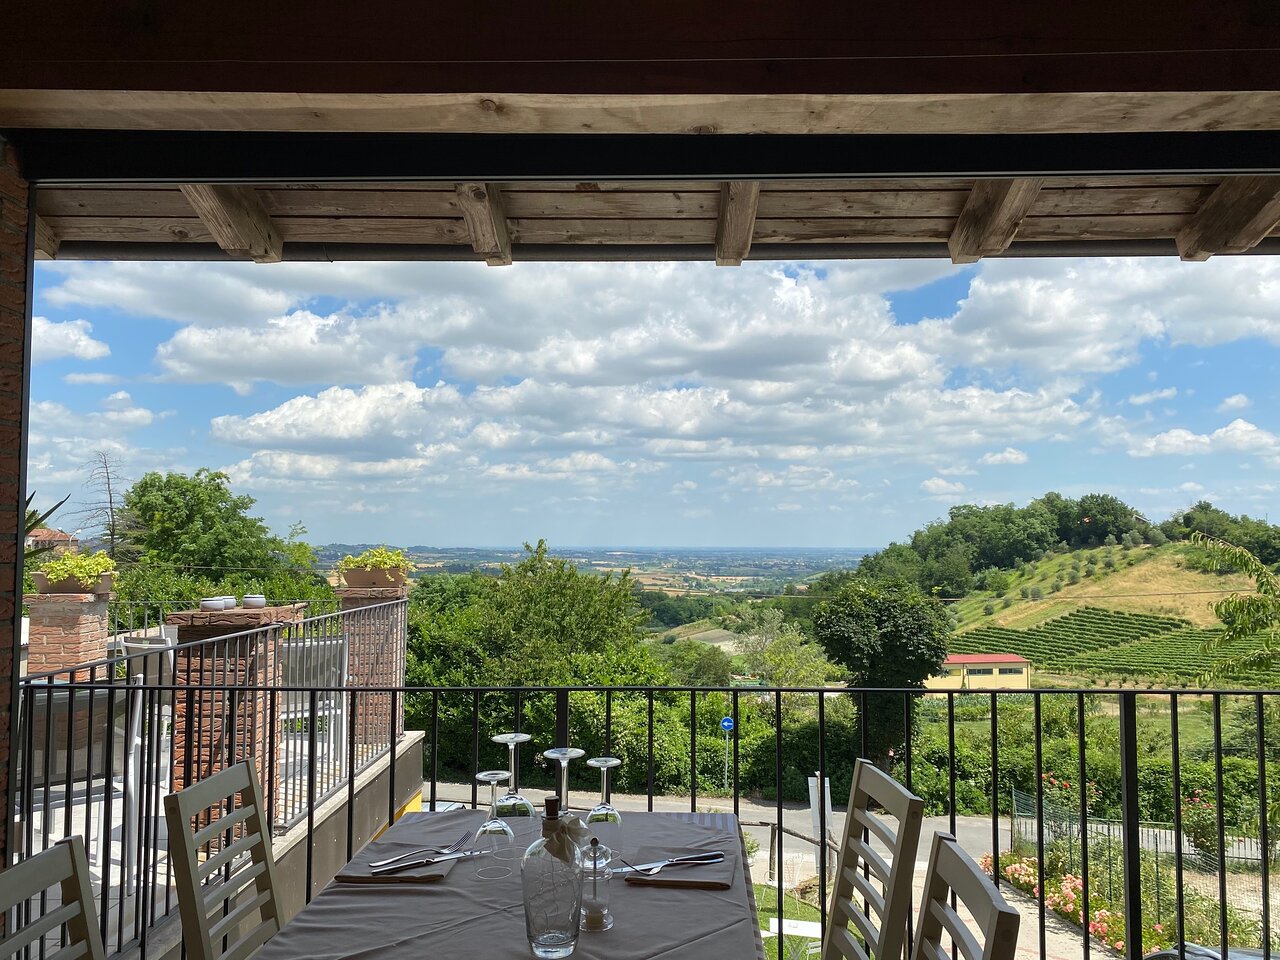 panorama dalla terrazza - Foto di Trattoria Panoramica ...